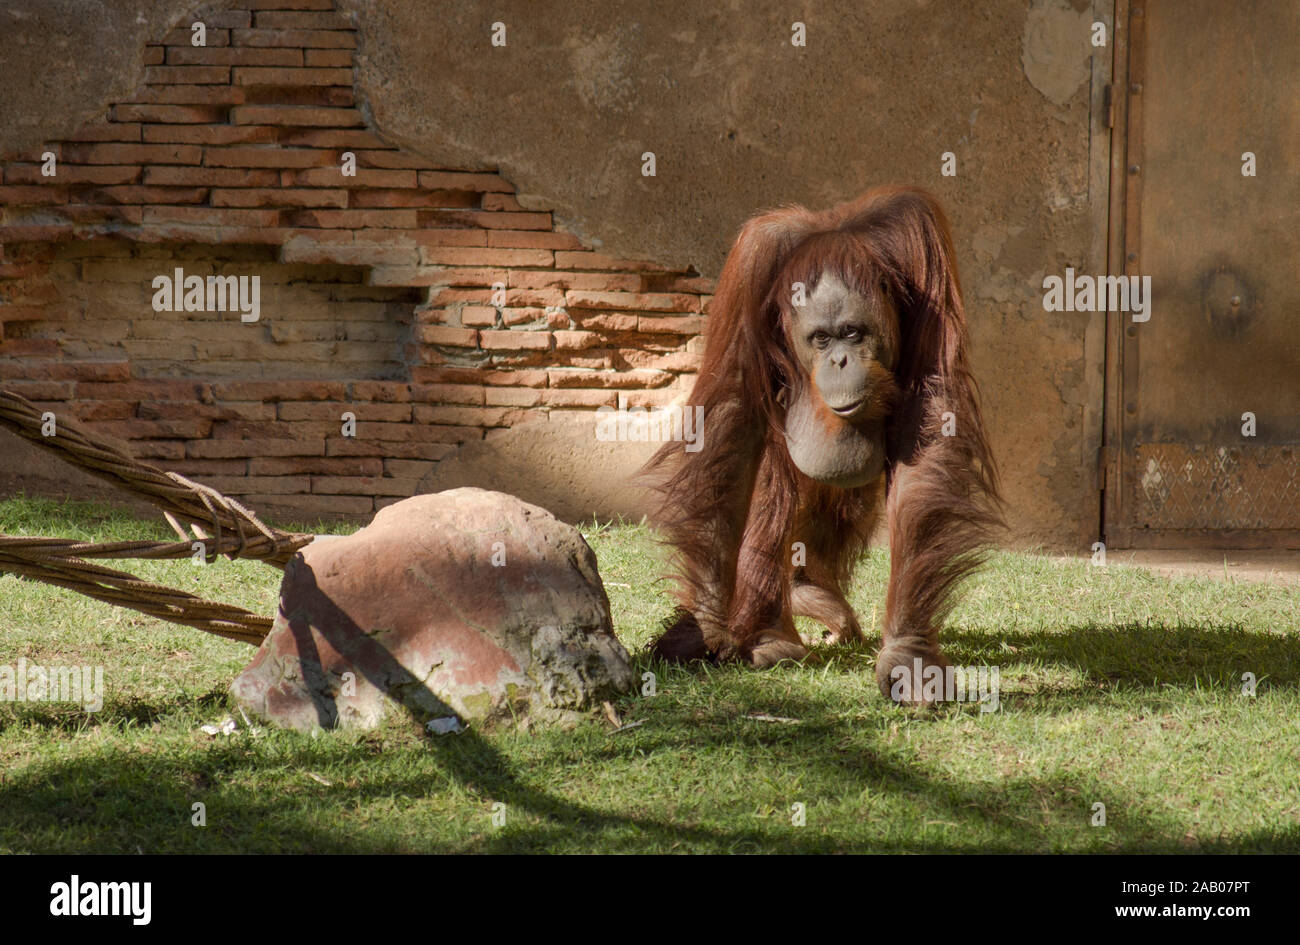 Bornean, orangután Pongo pygmaeus en el gabinete, orangutanes, zoológico Bioparc Fuengirola, España. Foto de stock